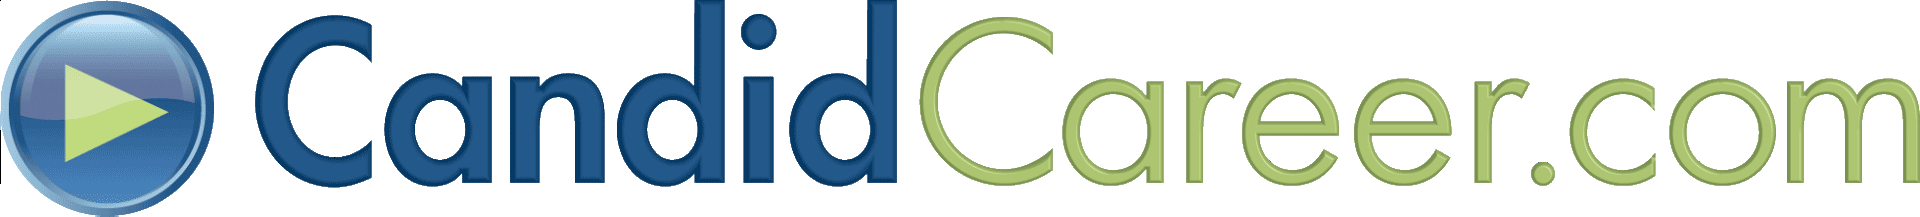 CandidCareer.com (logo)